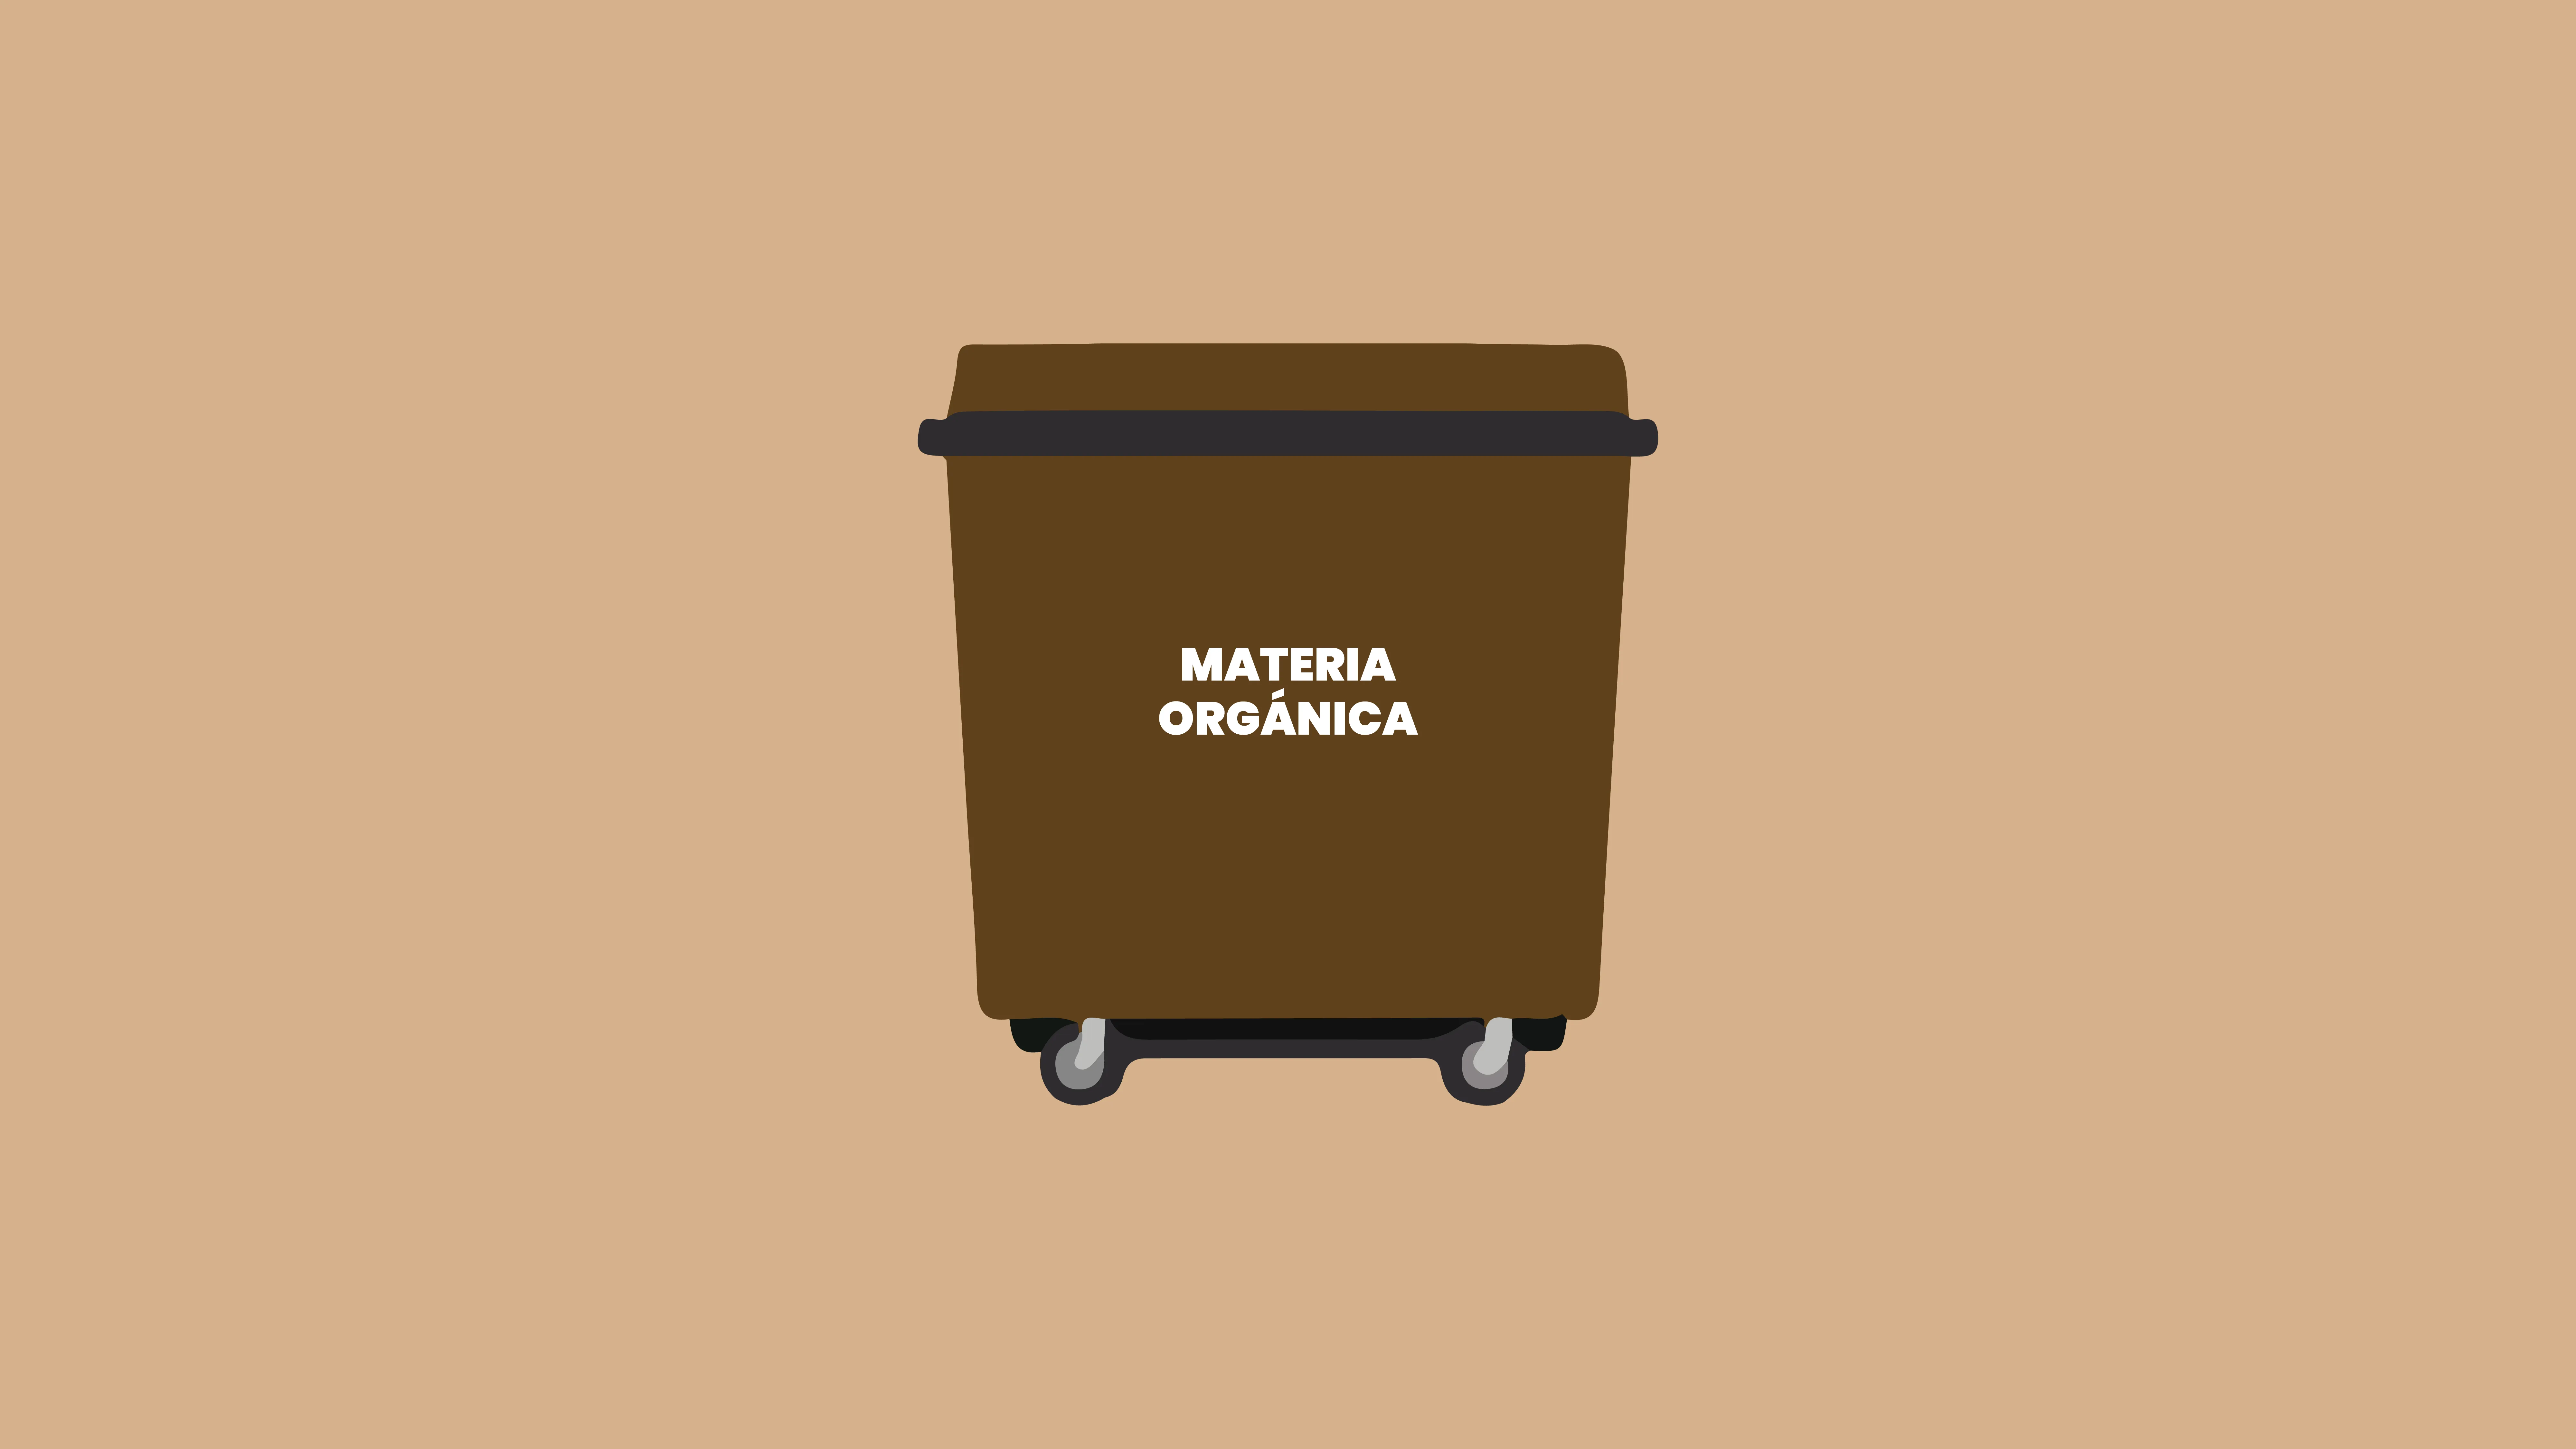 O contedor marrón: A materia orgánica III